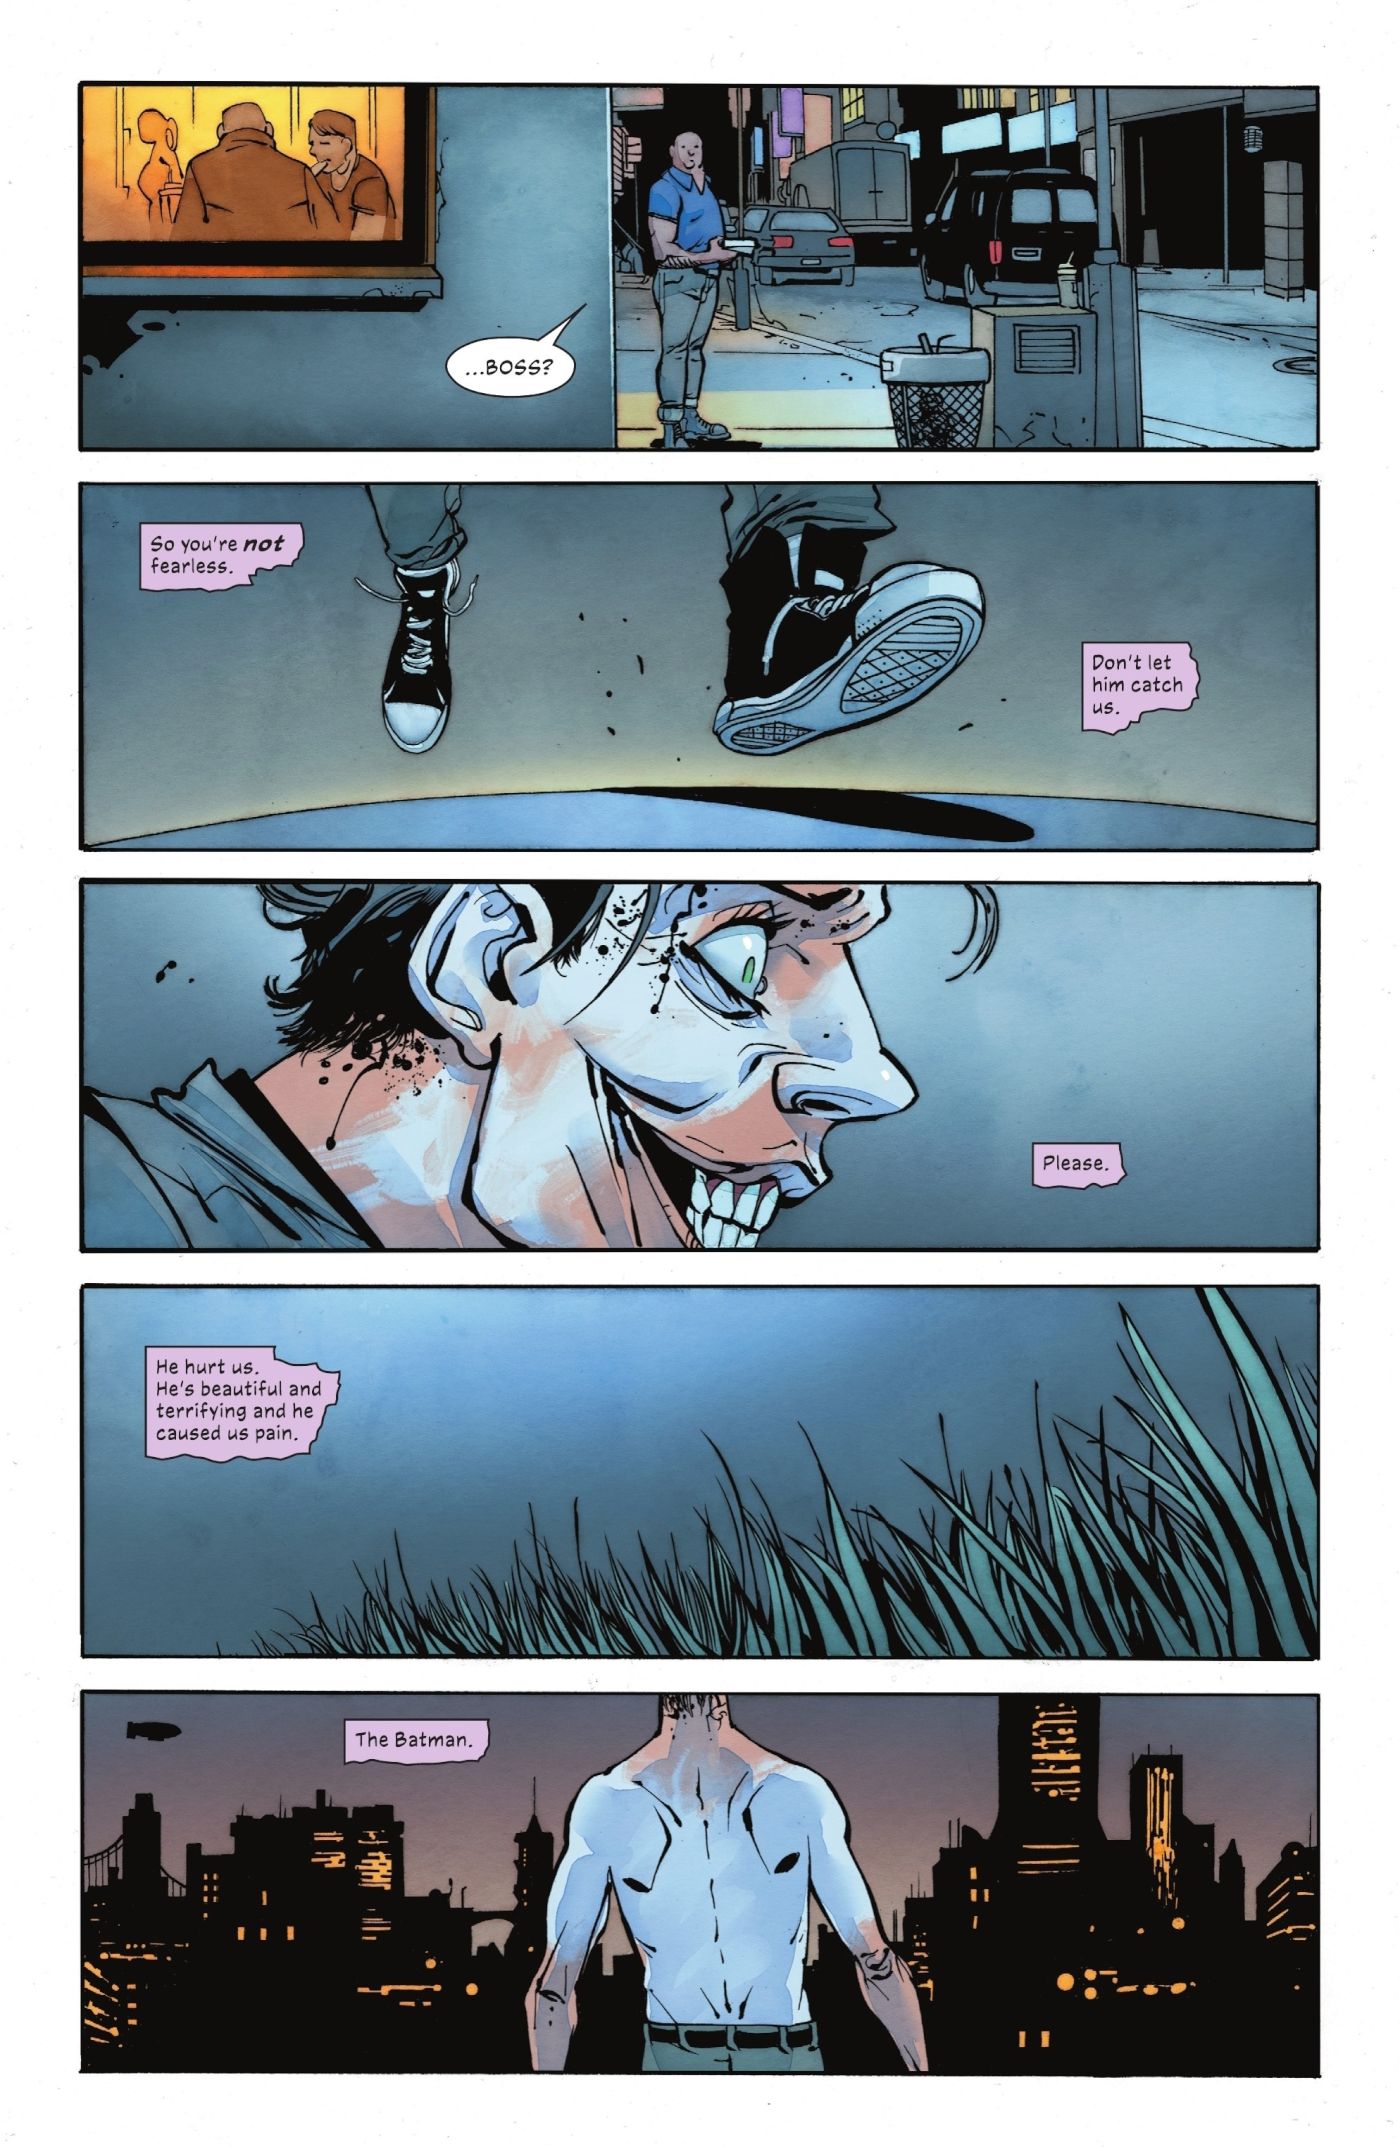 Comic book panels: Joker Admits That He's Afraid Of Batman